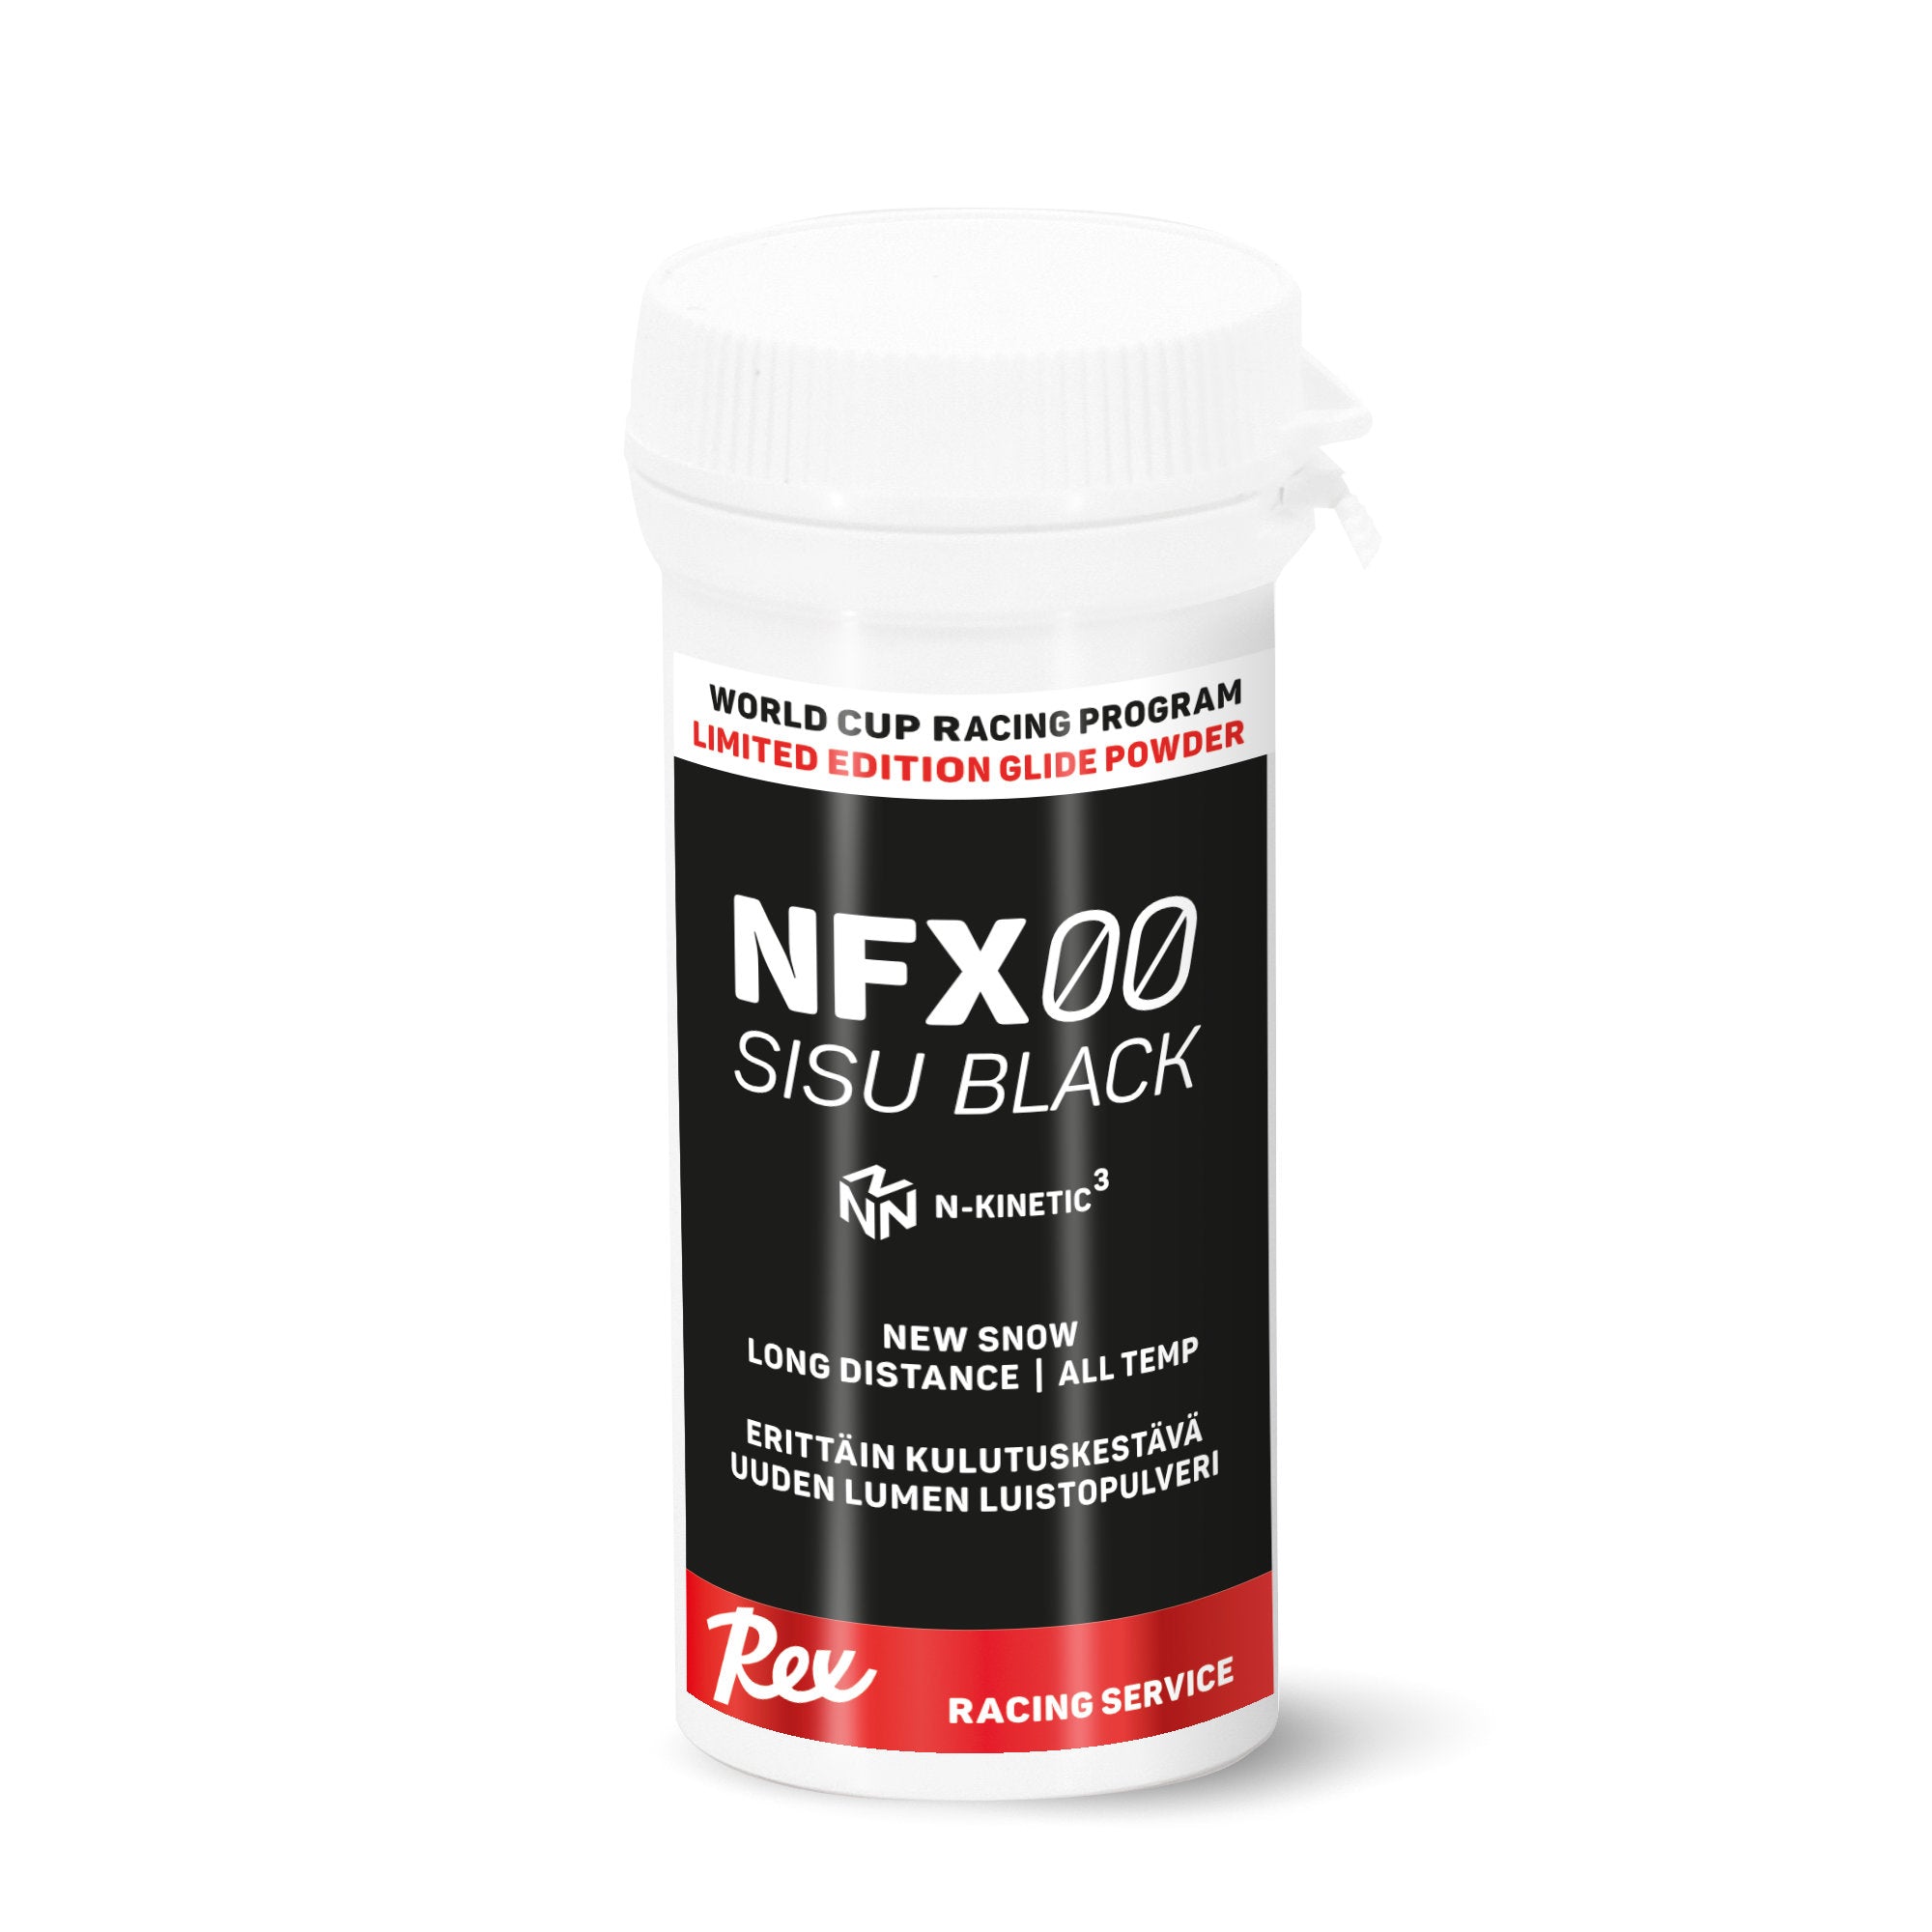 Rex NFX00 Sisu Black Powder 20g